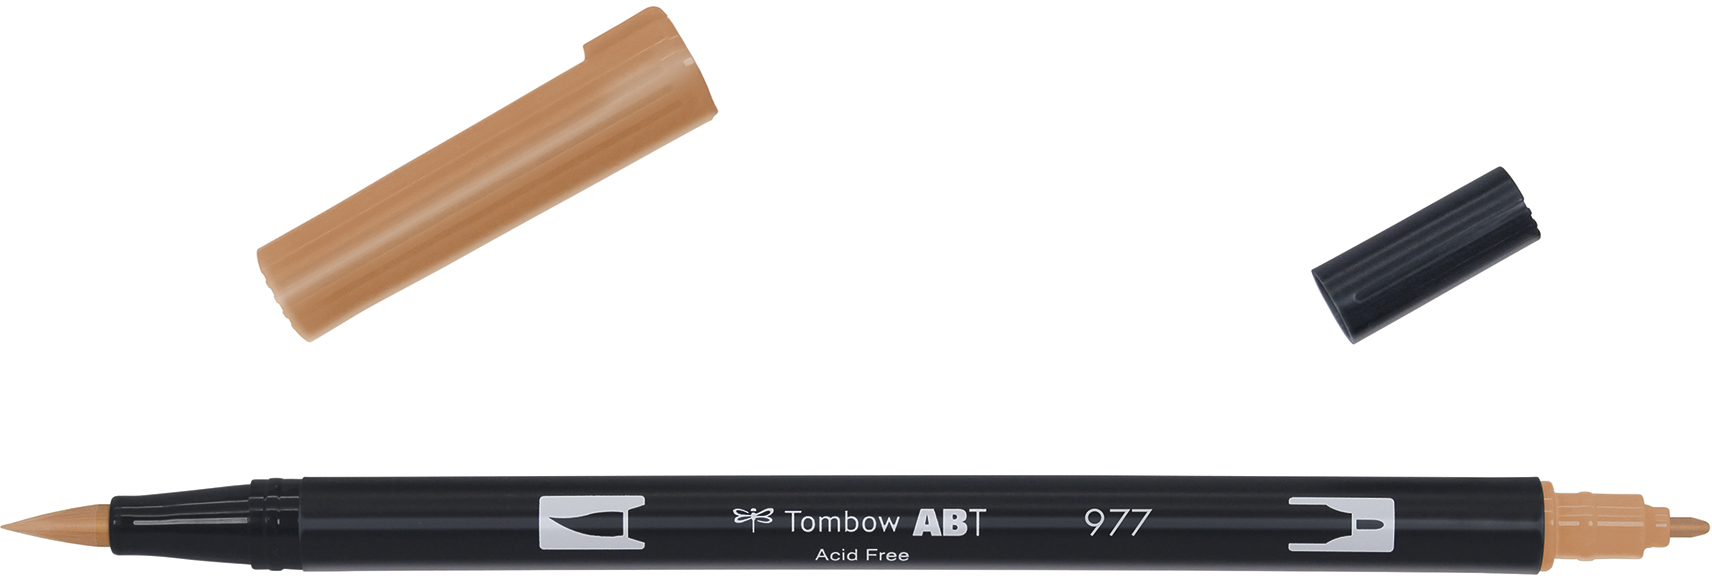 TOMBOW Dual Brush Pen ABT 977 saddle brown